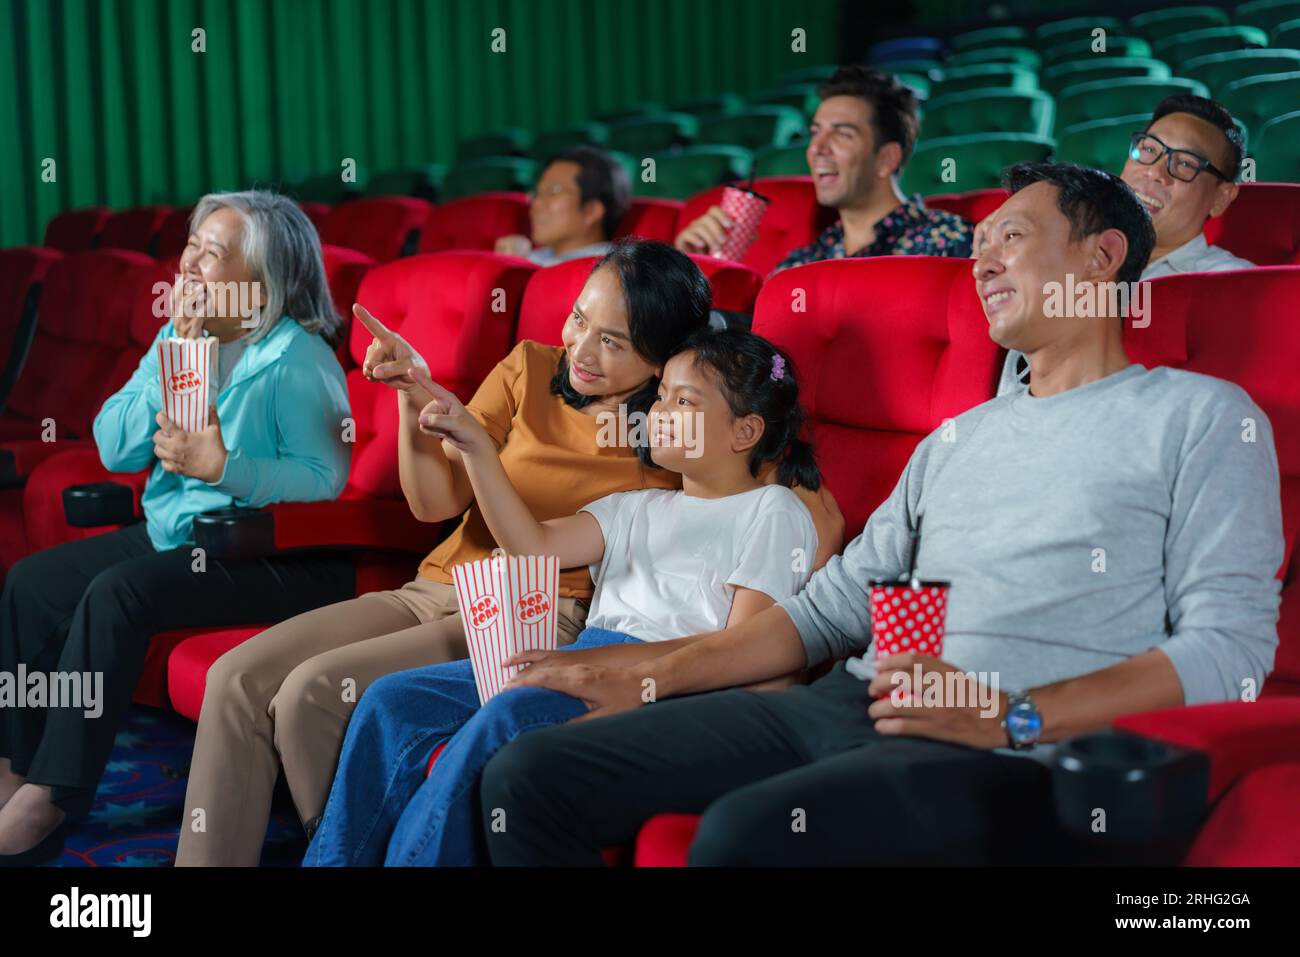 La famille asiatique heureuse de père, mère, fils et grand-mère chérit les moments du week-end au cinéma, partageant la joie et la convivialité tout en regardant une Movi Banque D'Images